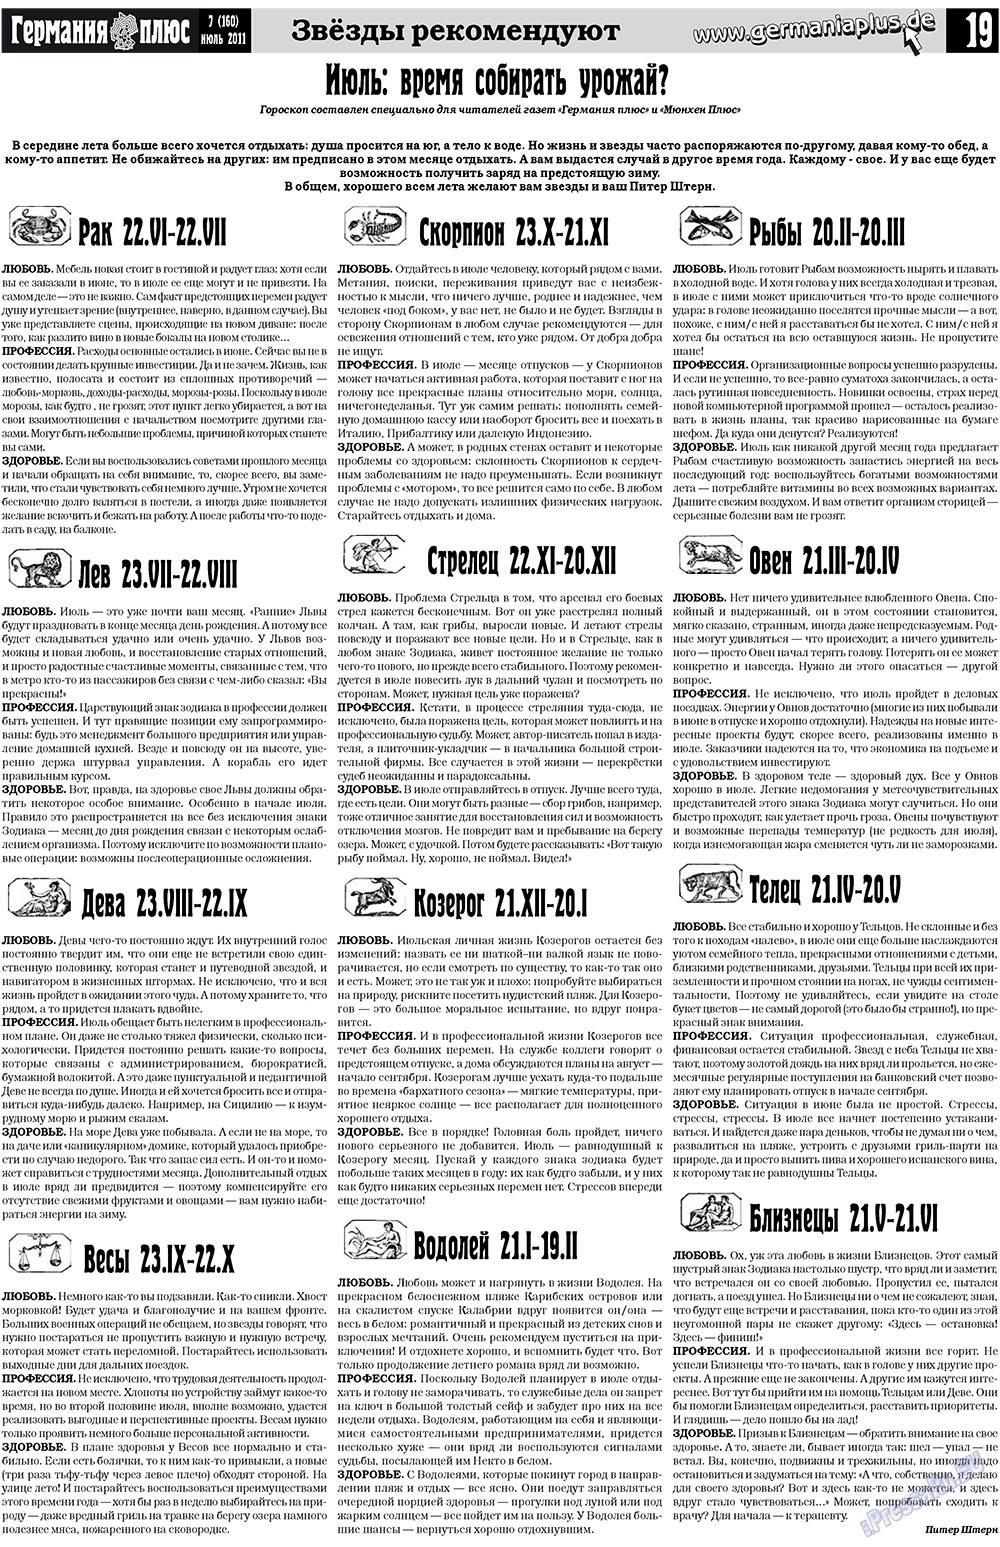 Германия плюс, газета. 2011 №7 стр.19